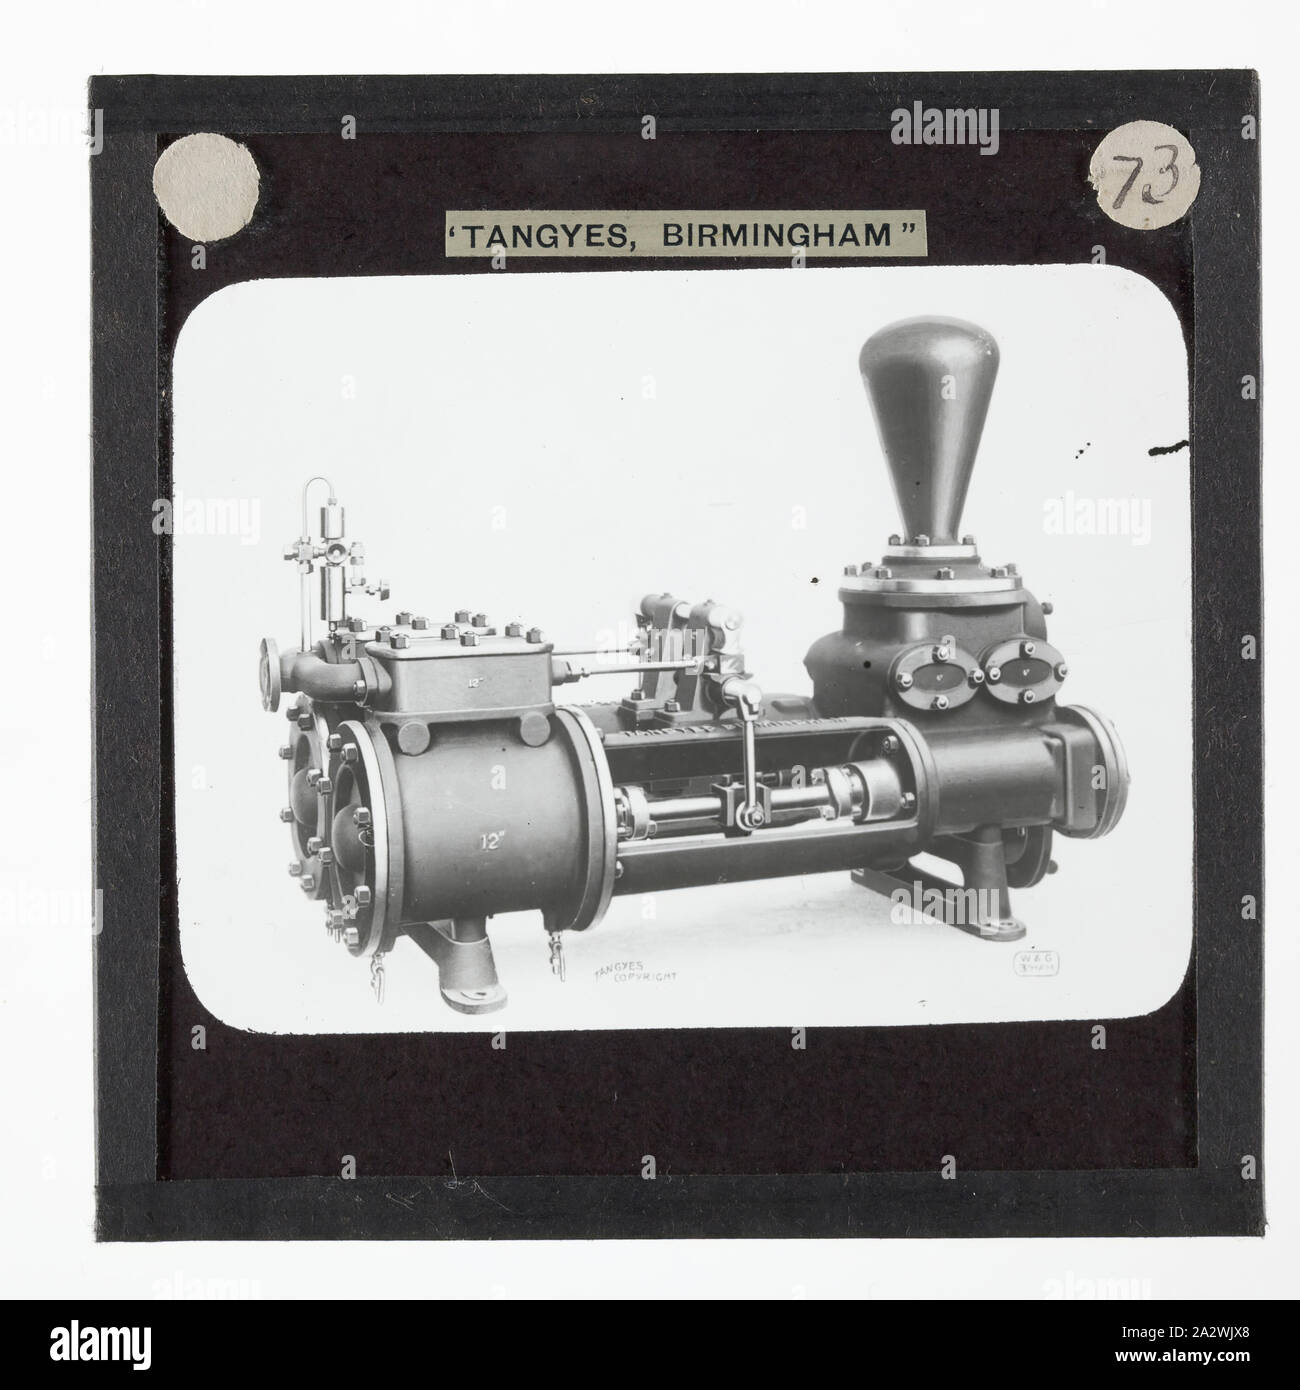 Lantern Slide-Tangyes Ltd, speziellen Ram-Pumpe, um 1910, eine der 239 Glas Laterne Folien, Produkte von Tangyes begrenzt Ingenieure von Birmingham, England hergestellt. Die Bilder gehören verschiedene Produkte wie Motoren, Kreiselpumpen, Hydraulikpumpen, Gasproduzenten, Materialprüfung, Pressen, Werkzeugmaschinen, Hydraulikzylinder etc. Tangyes war ein Unternehmen, das von 1857 bis 1957 betrieben. Sie produziert eine Vielzahl von Engineering Stockfoto